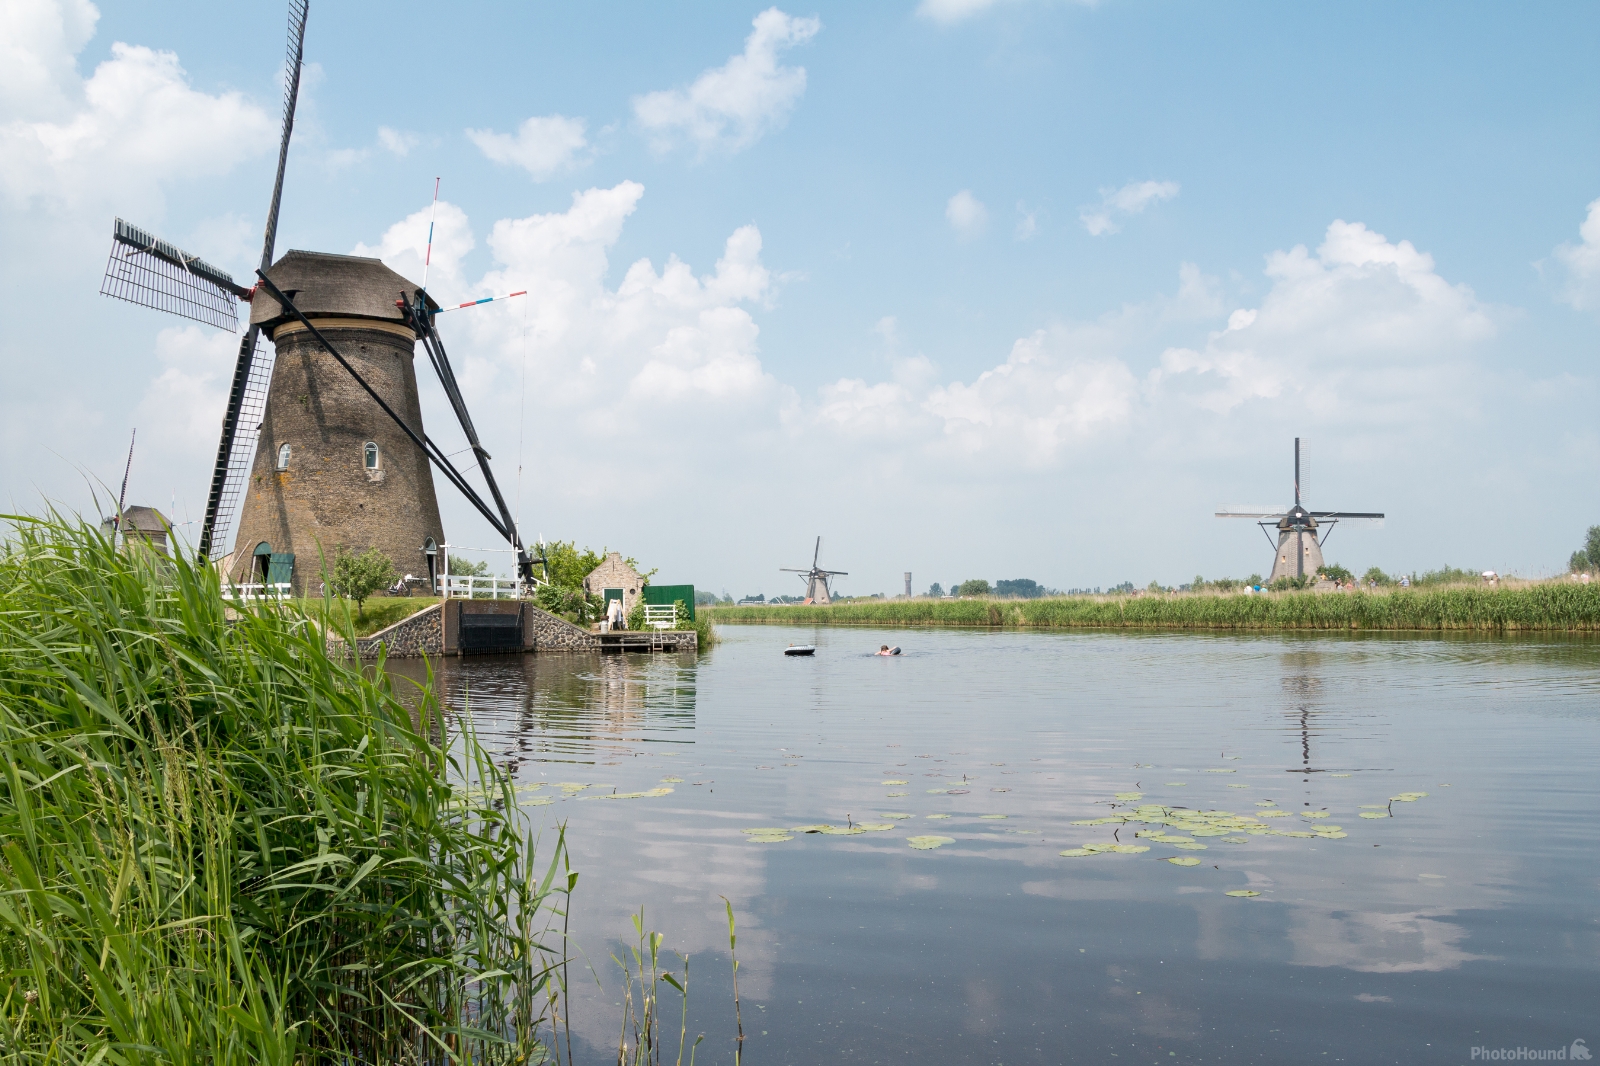 Image of Windmills of Kinderdijk by Ruud Bijvank